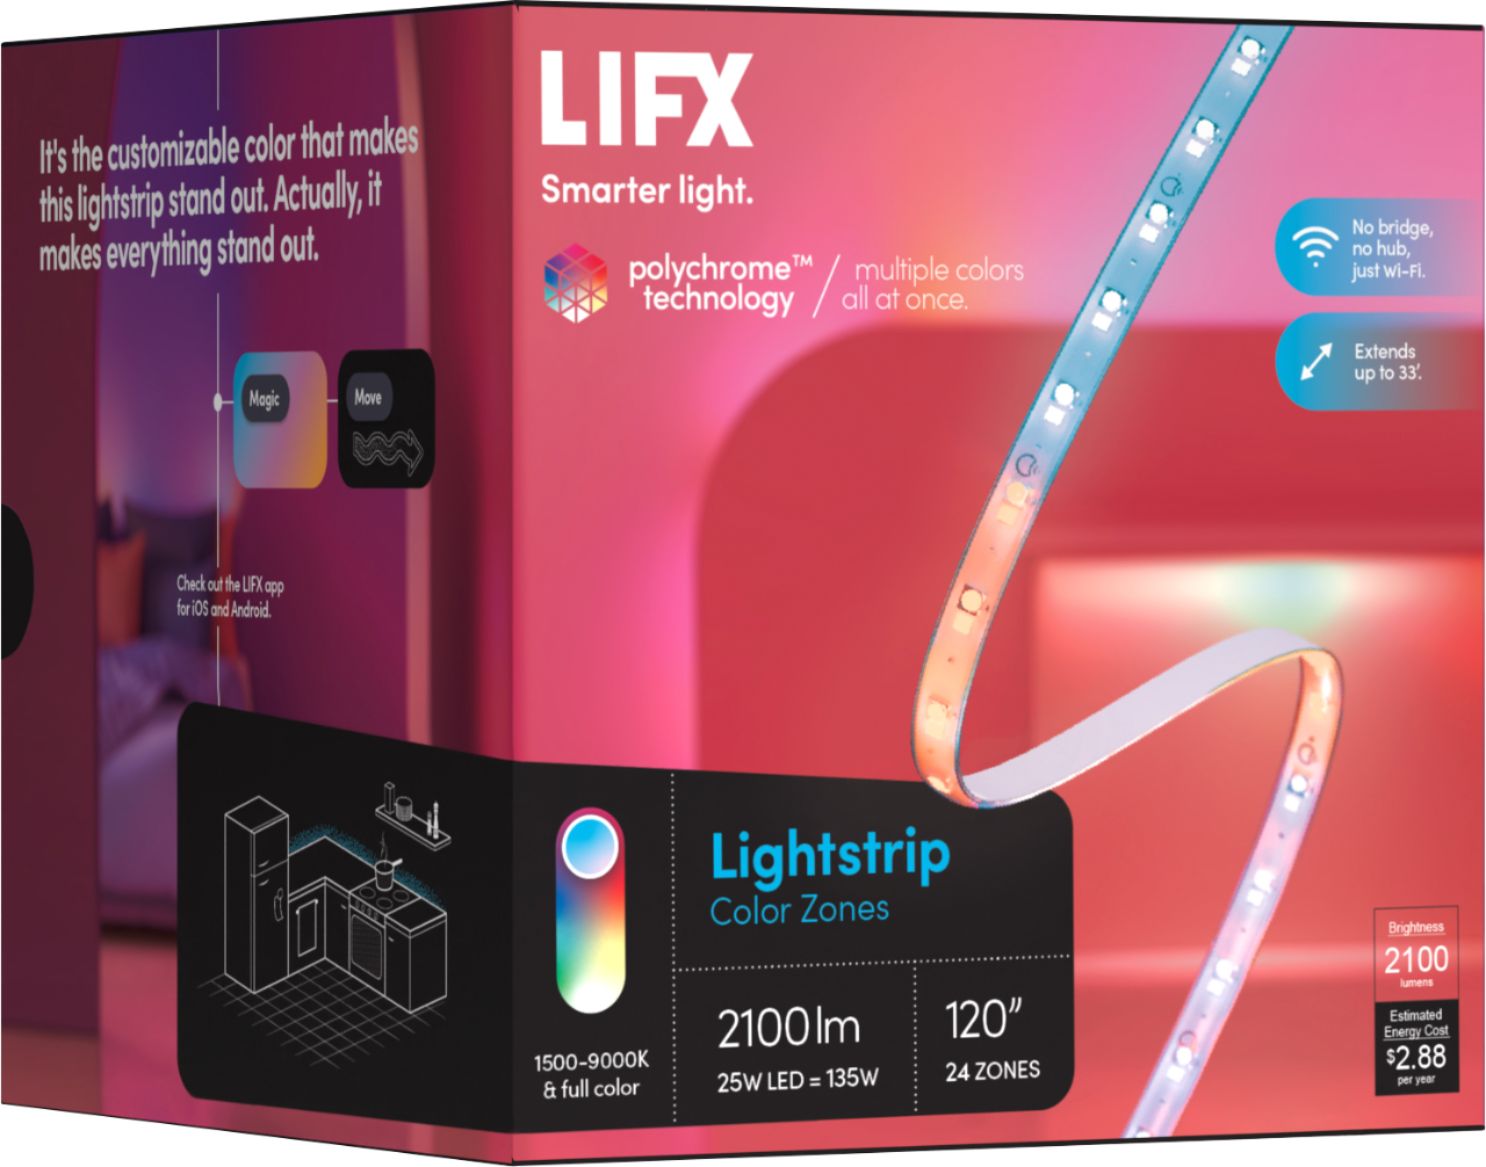 Color Zones 120" Lightstrip Details about   LIFX 